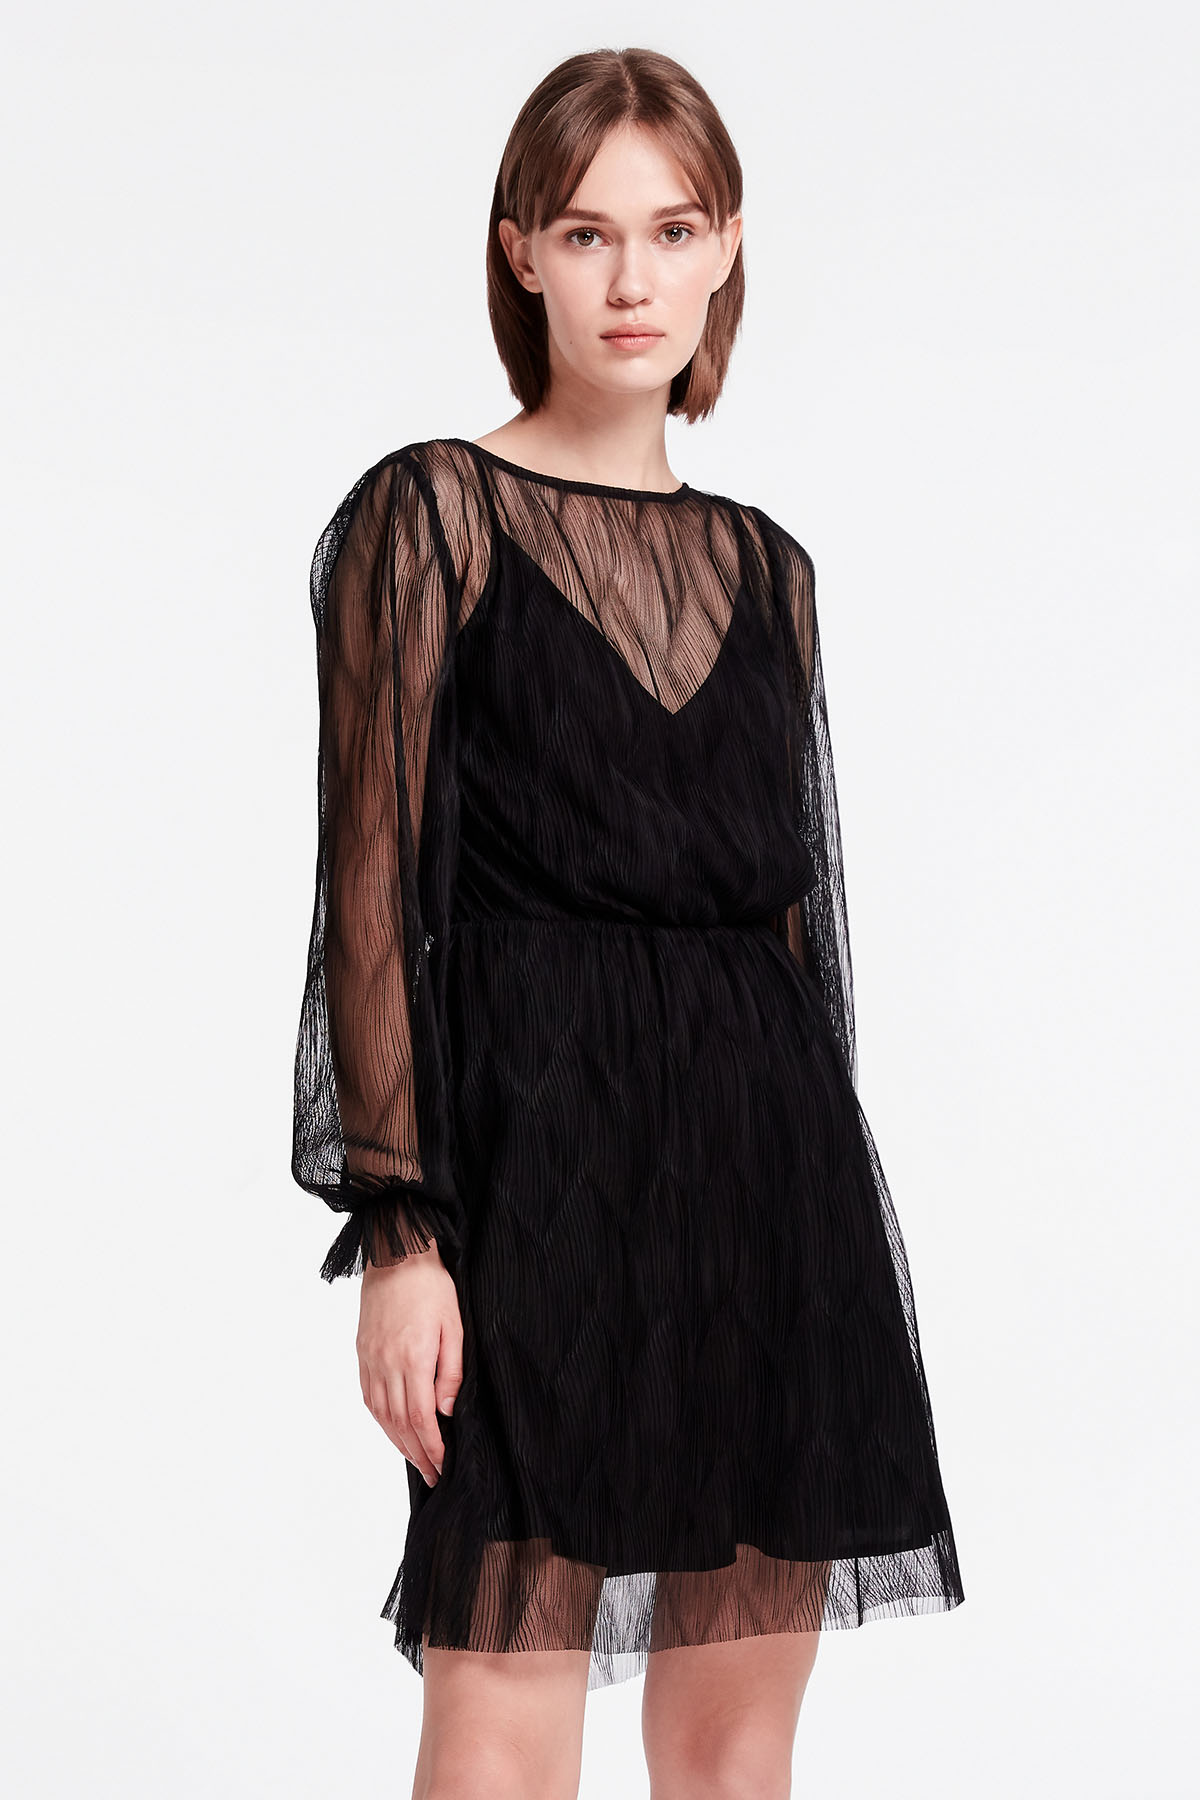 Black lace mini dress, photo 2